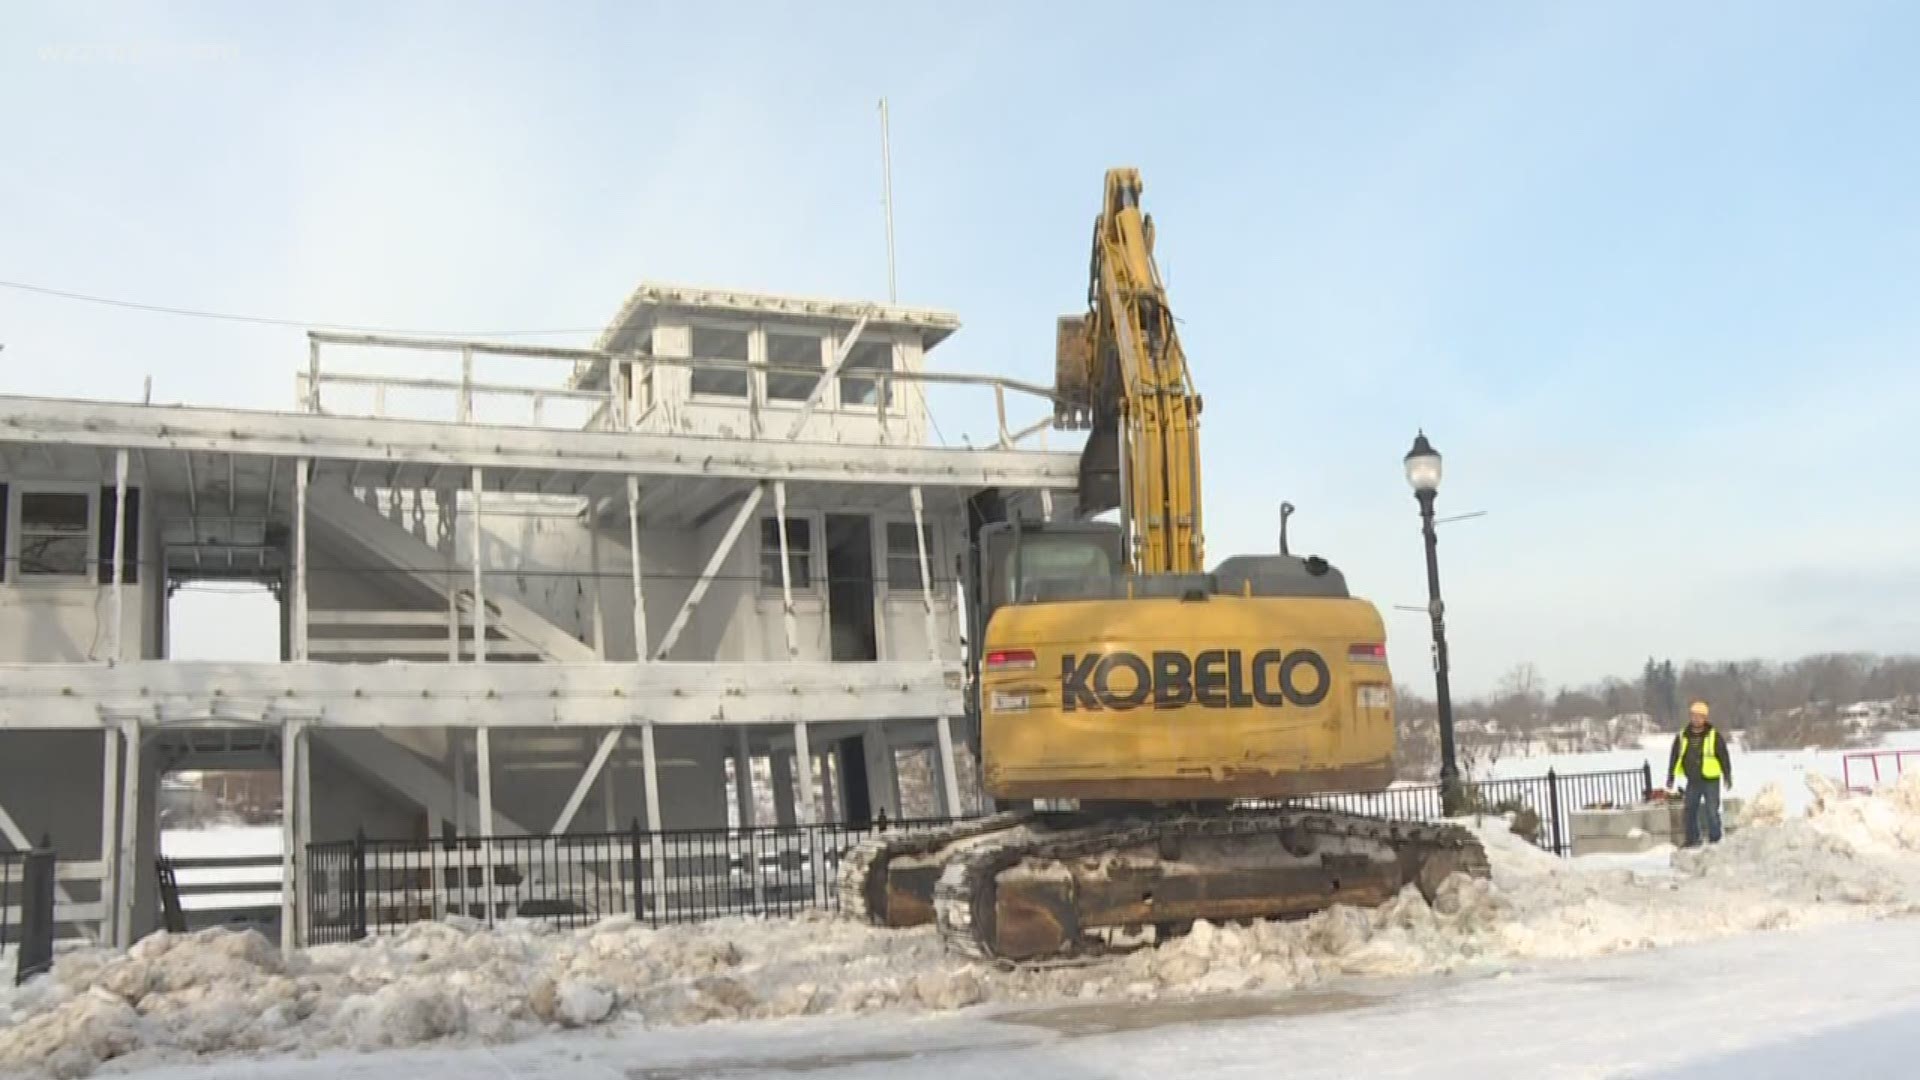 Lowell Showboat demolition begins